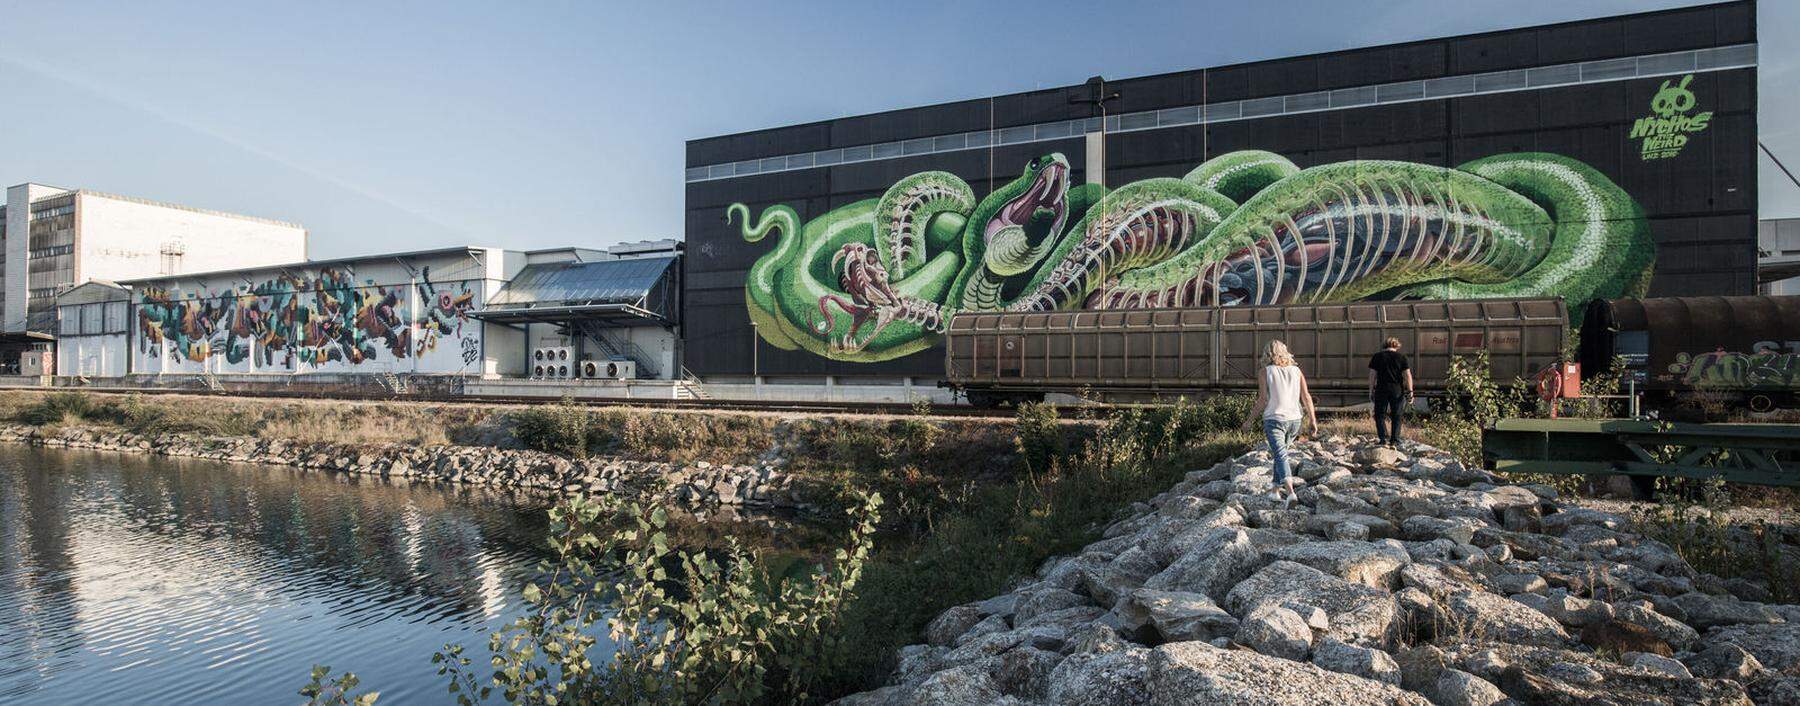 Mural Harbour in Linz: Europas größte Sammlung von Graffiti und Murali im Freien, im Hafengelände an der Donau.